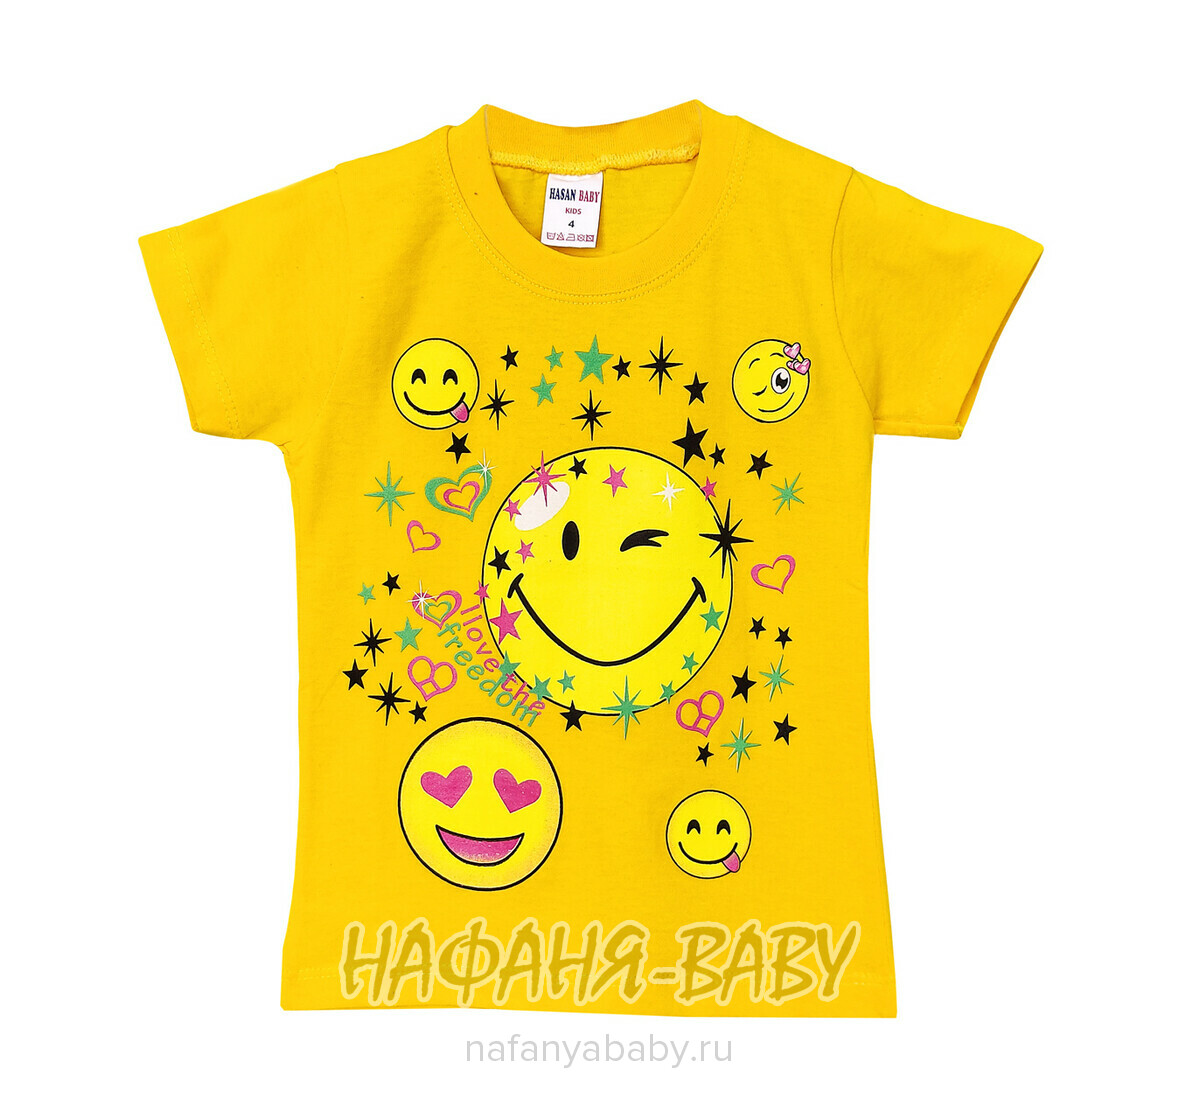 Детская футболка HASAN Bebe, купить в интернет магазине Нафаня. арт: 1339.